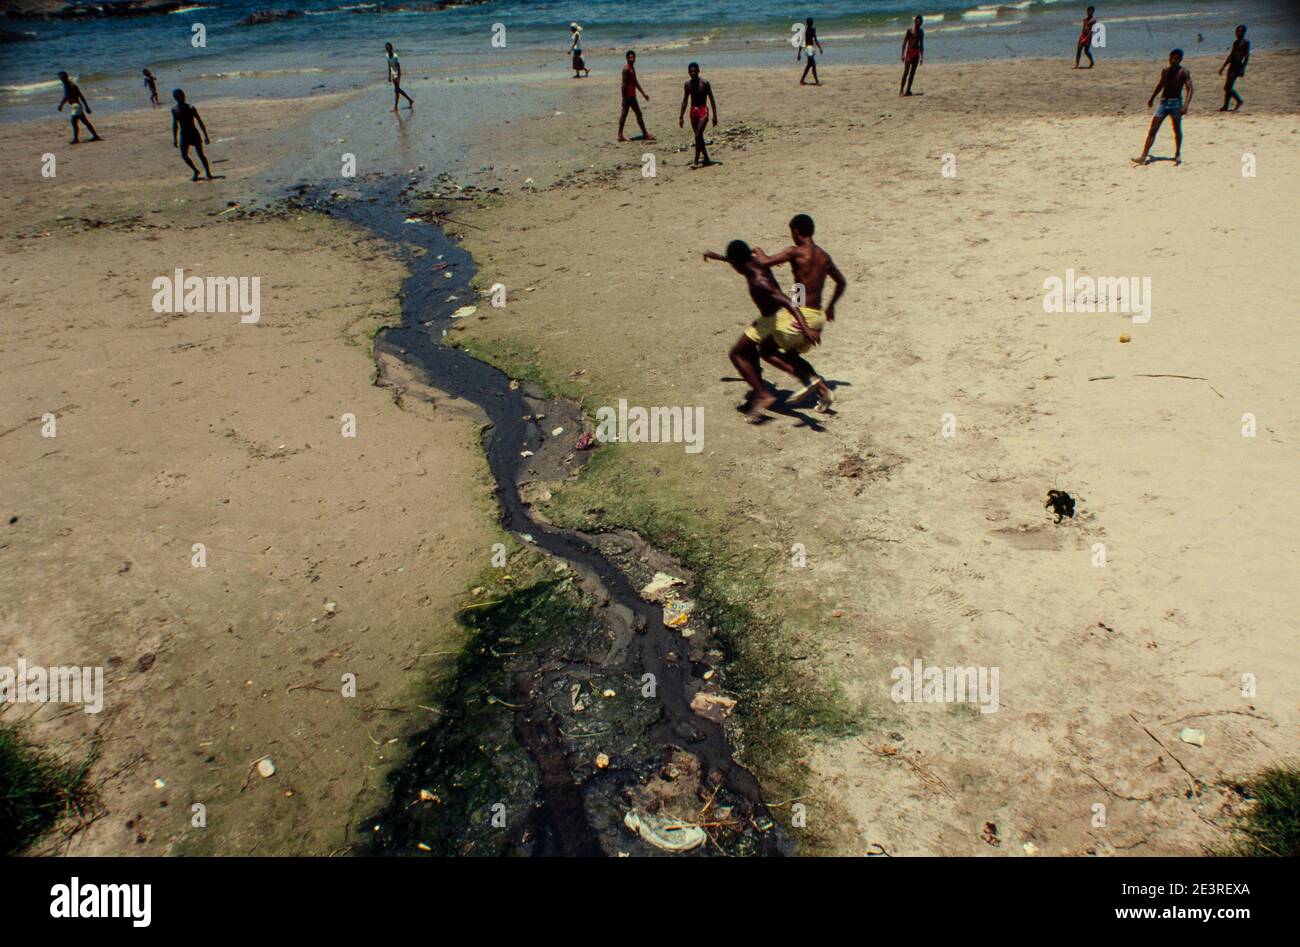 Schwarze junge Männer spielen Fußball neben offenen Abwässern, die direkt am Strand von Itapoa, Salvador City, Bahia State, im Nordosten Brasiliens entsorgt werden. Stockfoto